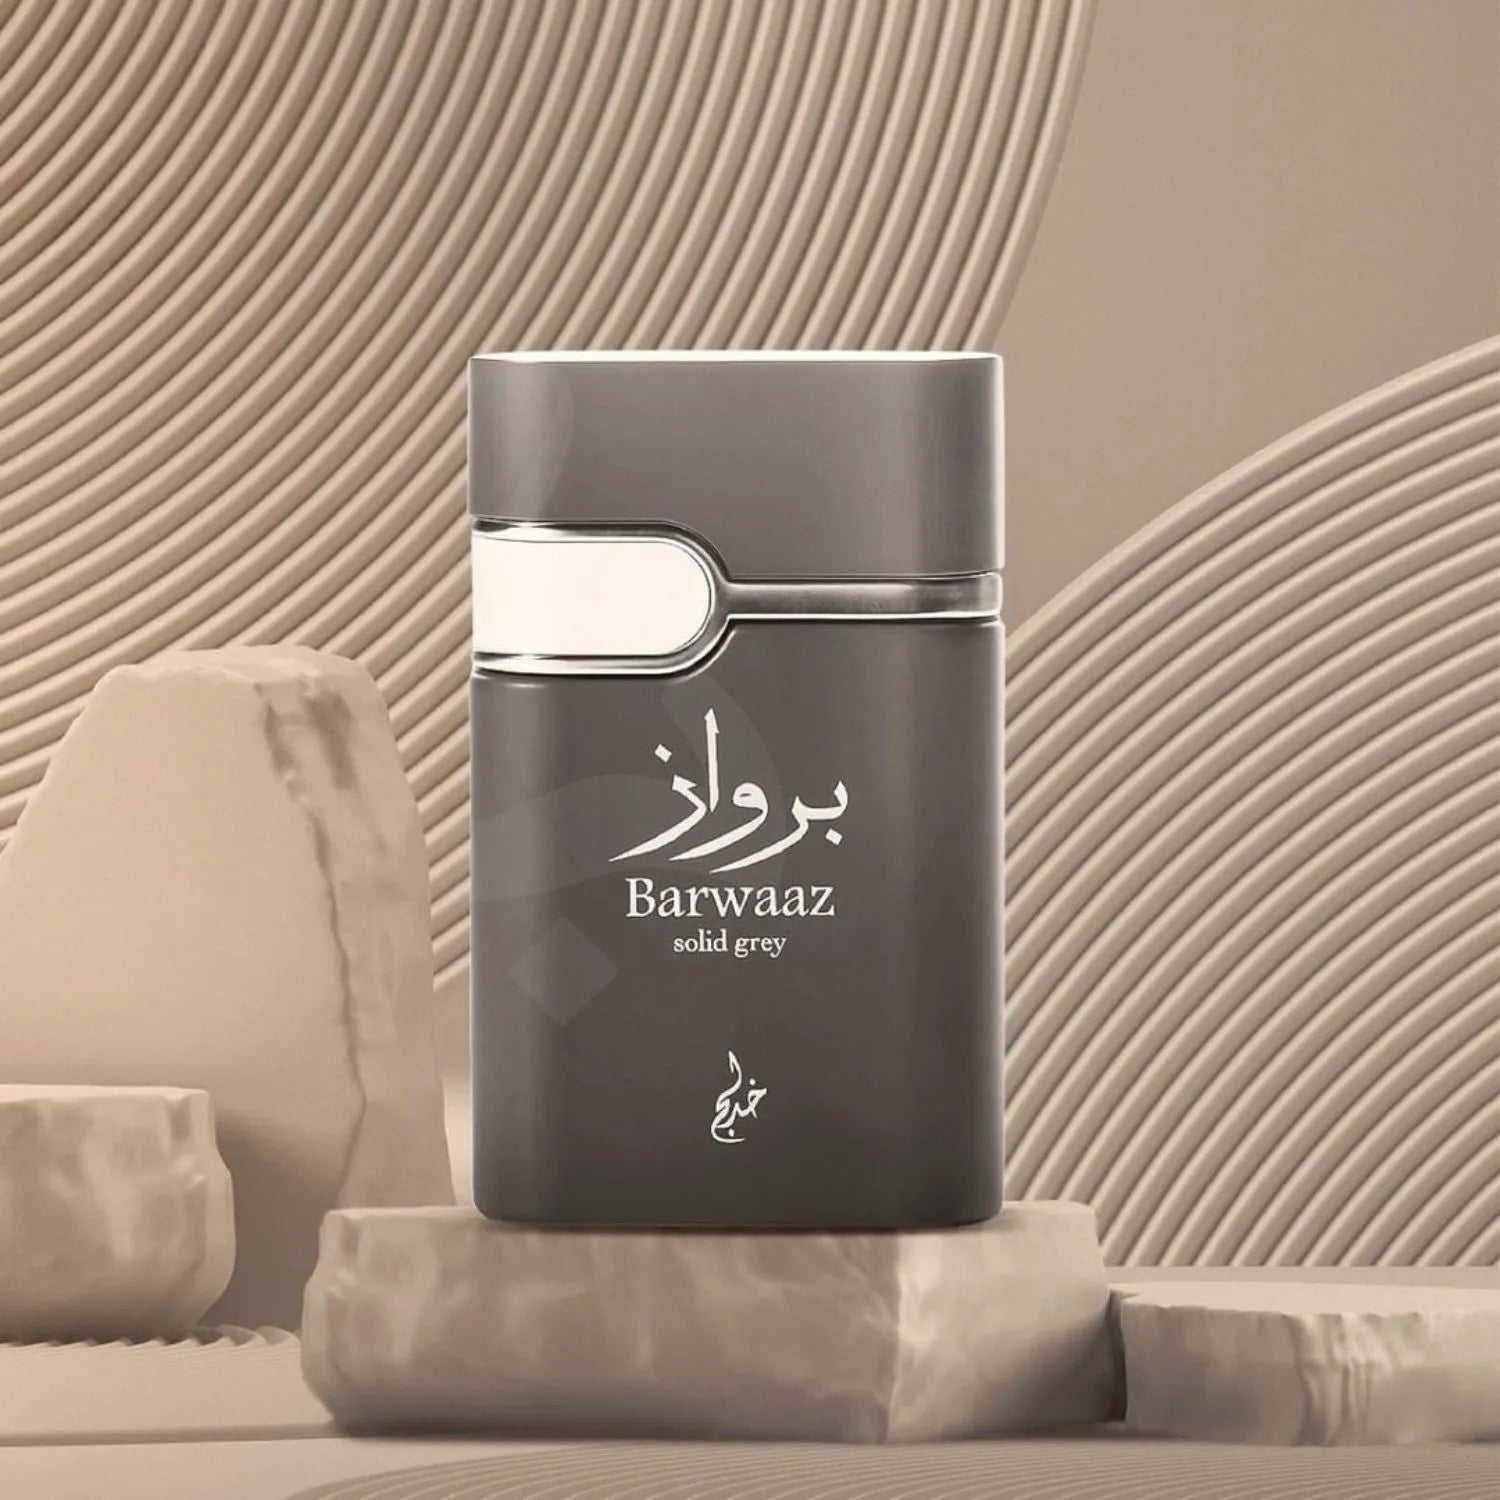 Barwaaz Solid Grey Perfume Image